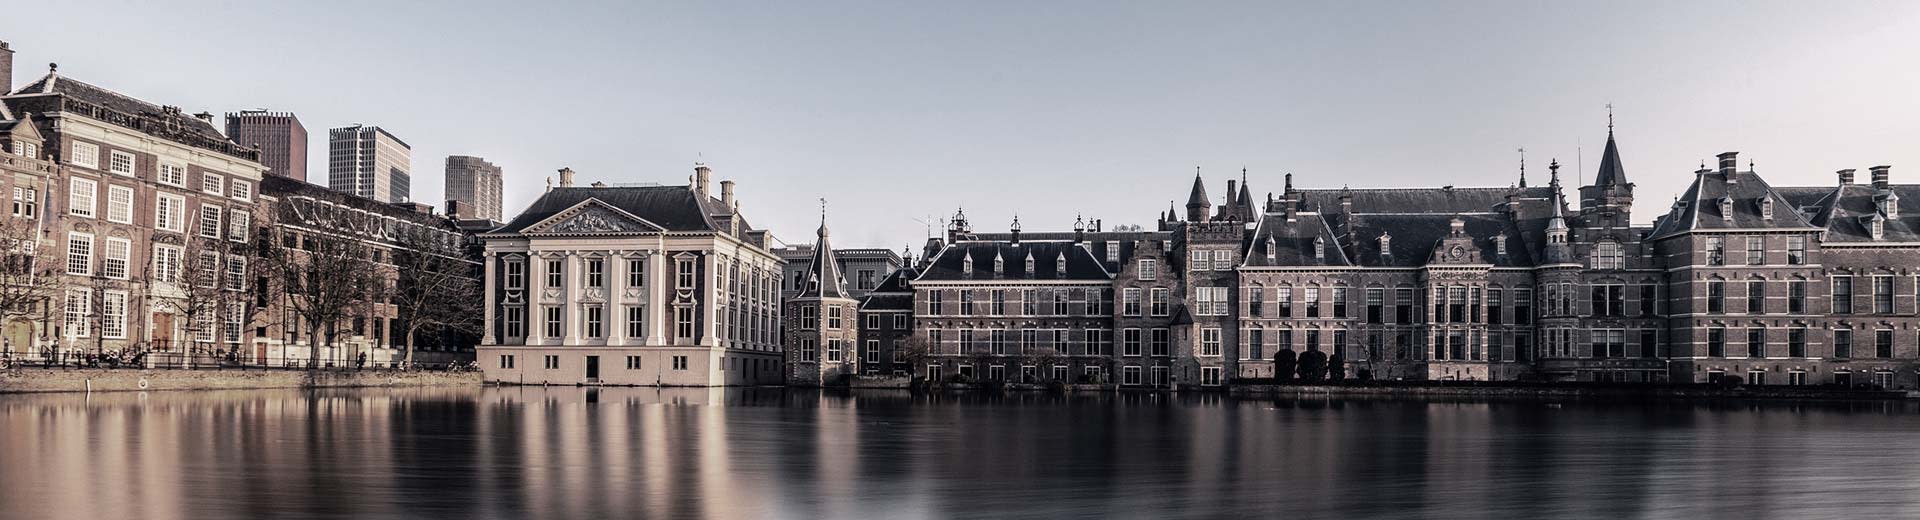 Detrás de un cuerpo de agua en La Haya hay una variedad de hermosos edificios históricos bajo un cielo claro y brillante.